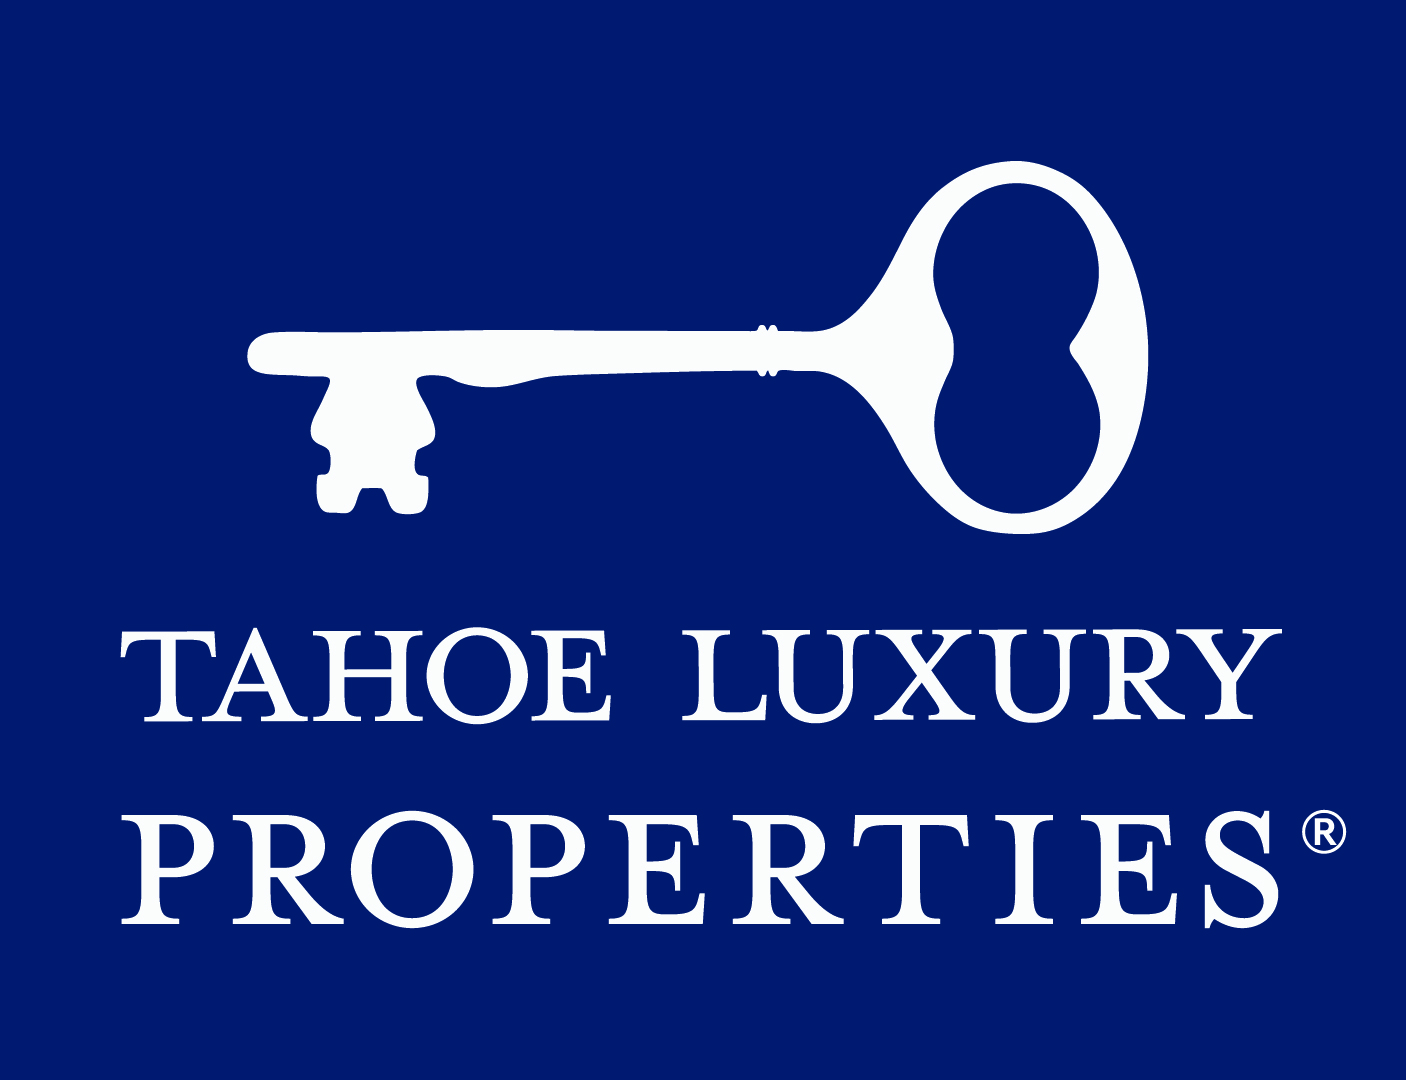 Tahoe Luxury Properties - Ultra Luxurious Lake Tahoe Real Estate & Vacation Rentals, Experience Tahoe in Style!